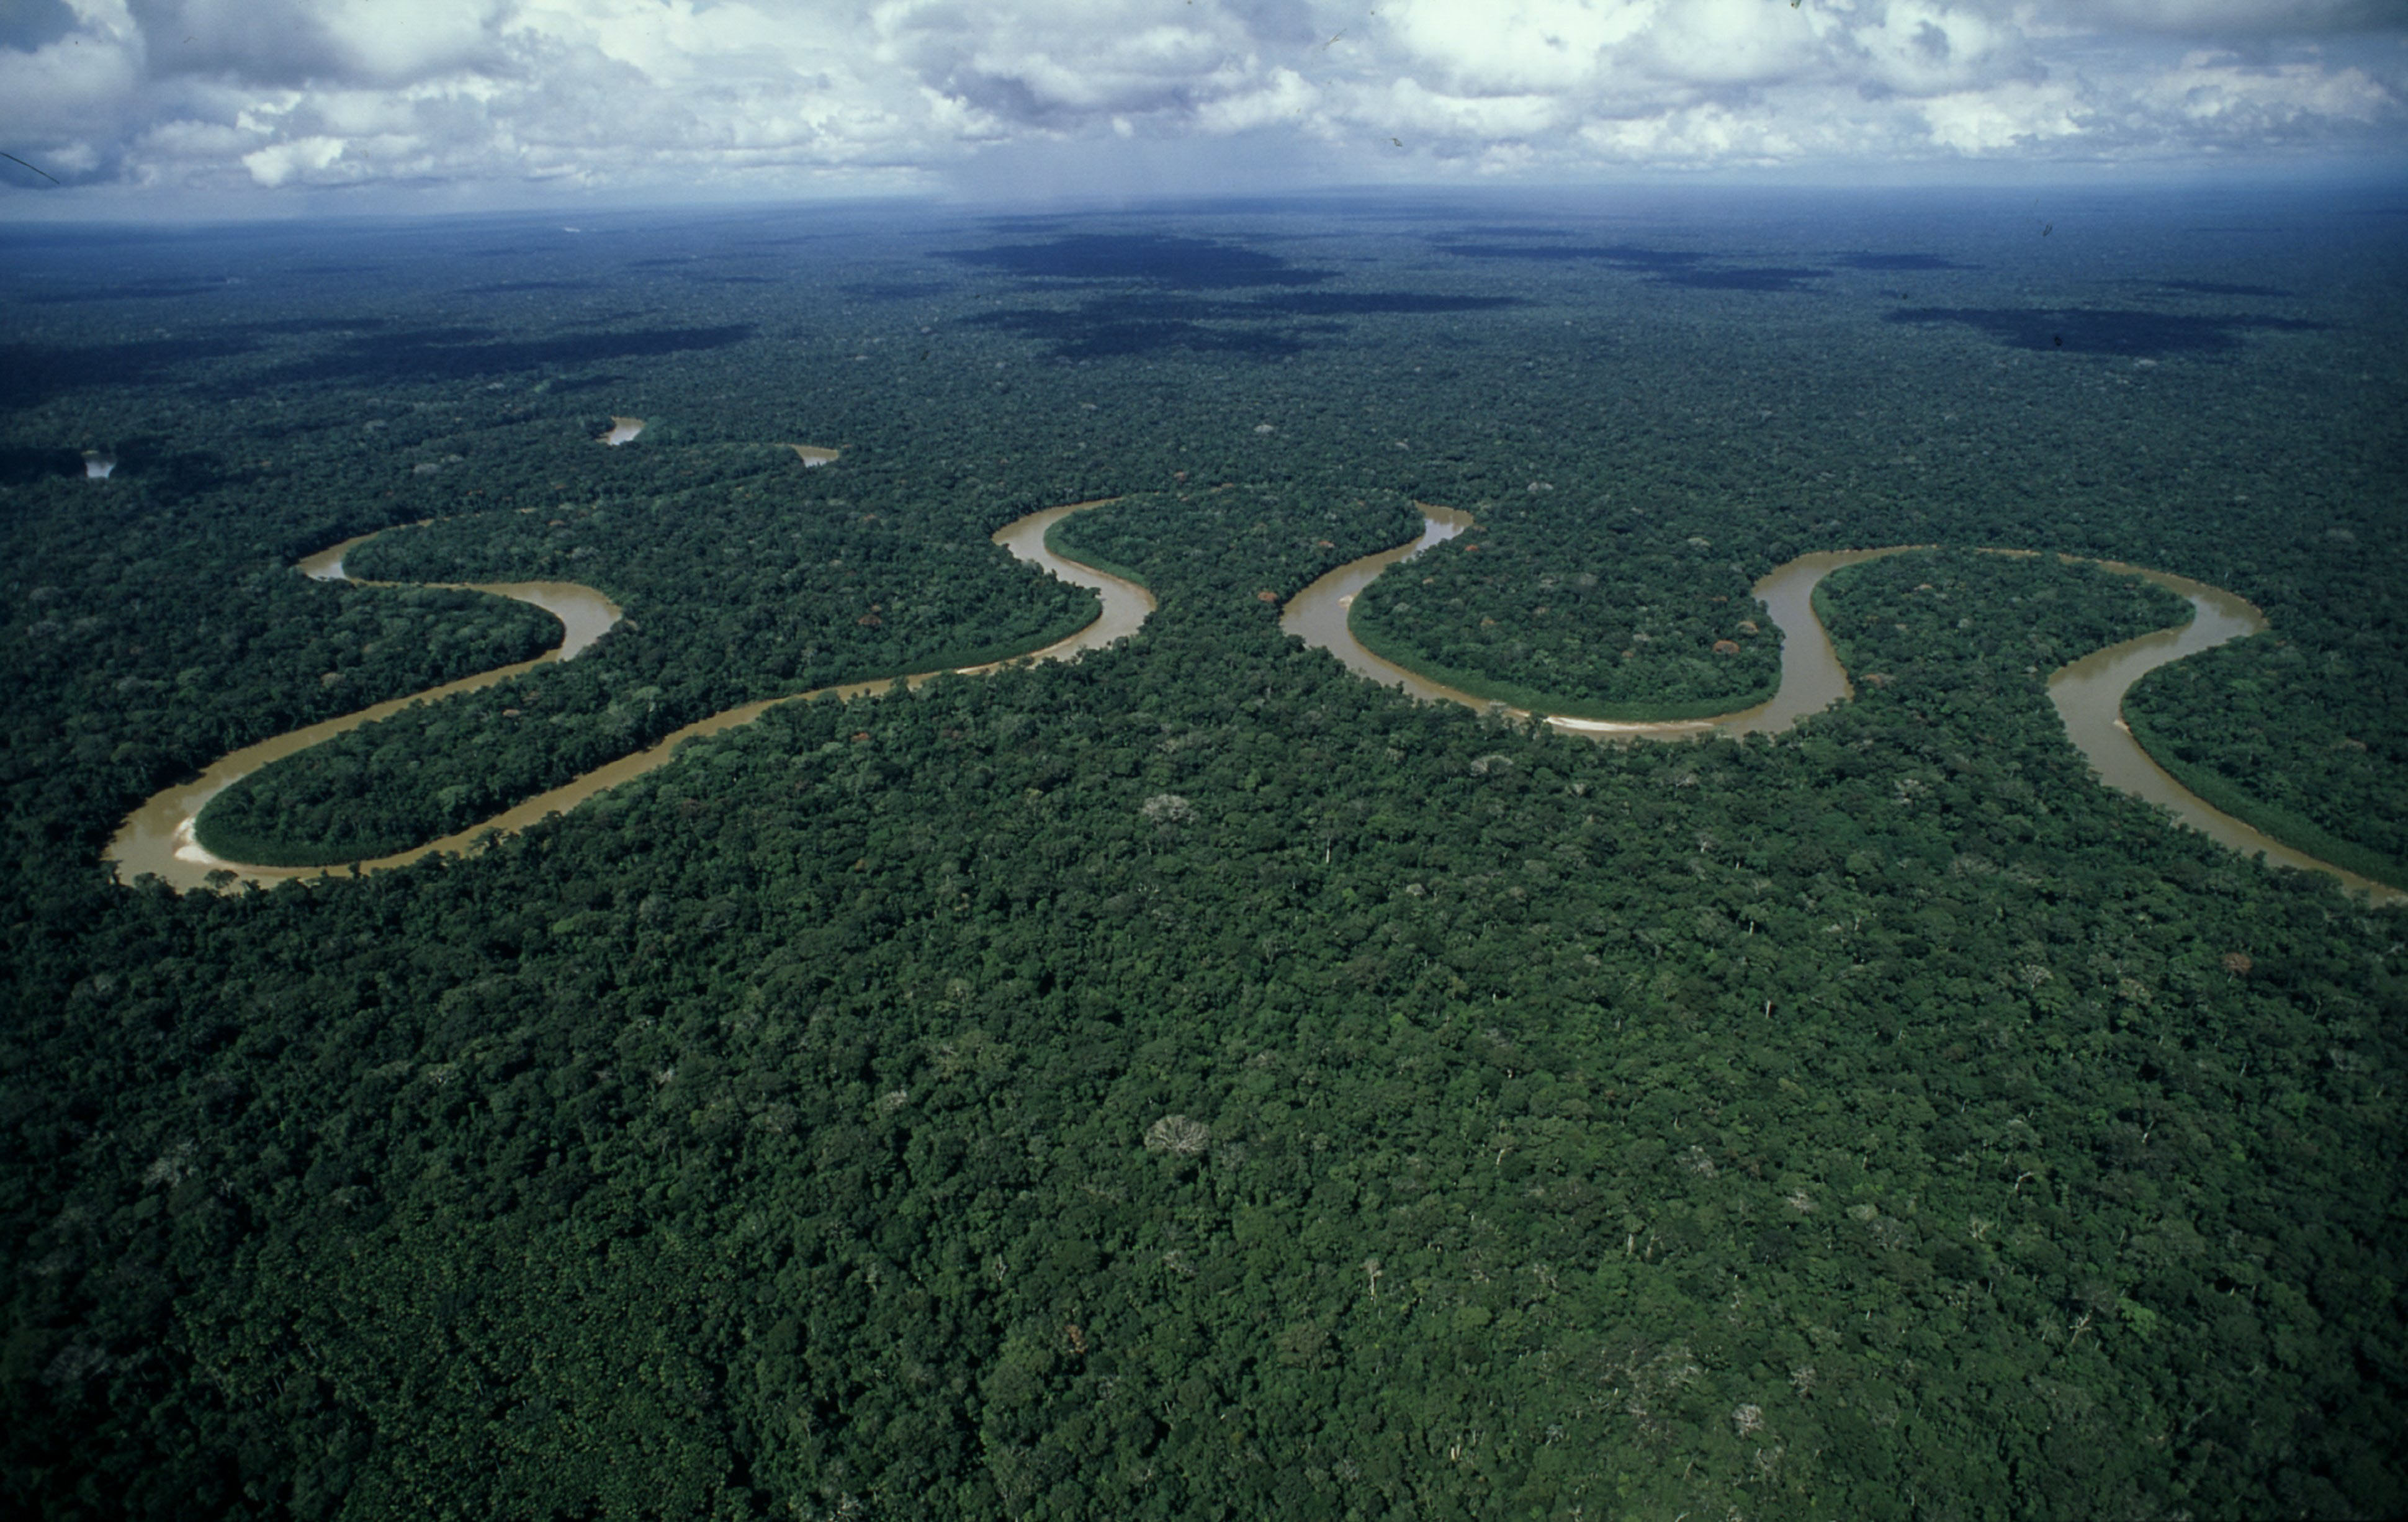 The meandering course of river Rio Pinquen, Amazon rainforest, Peru